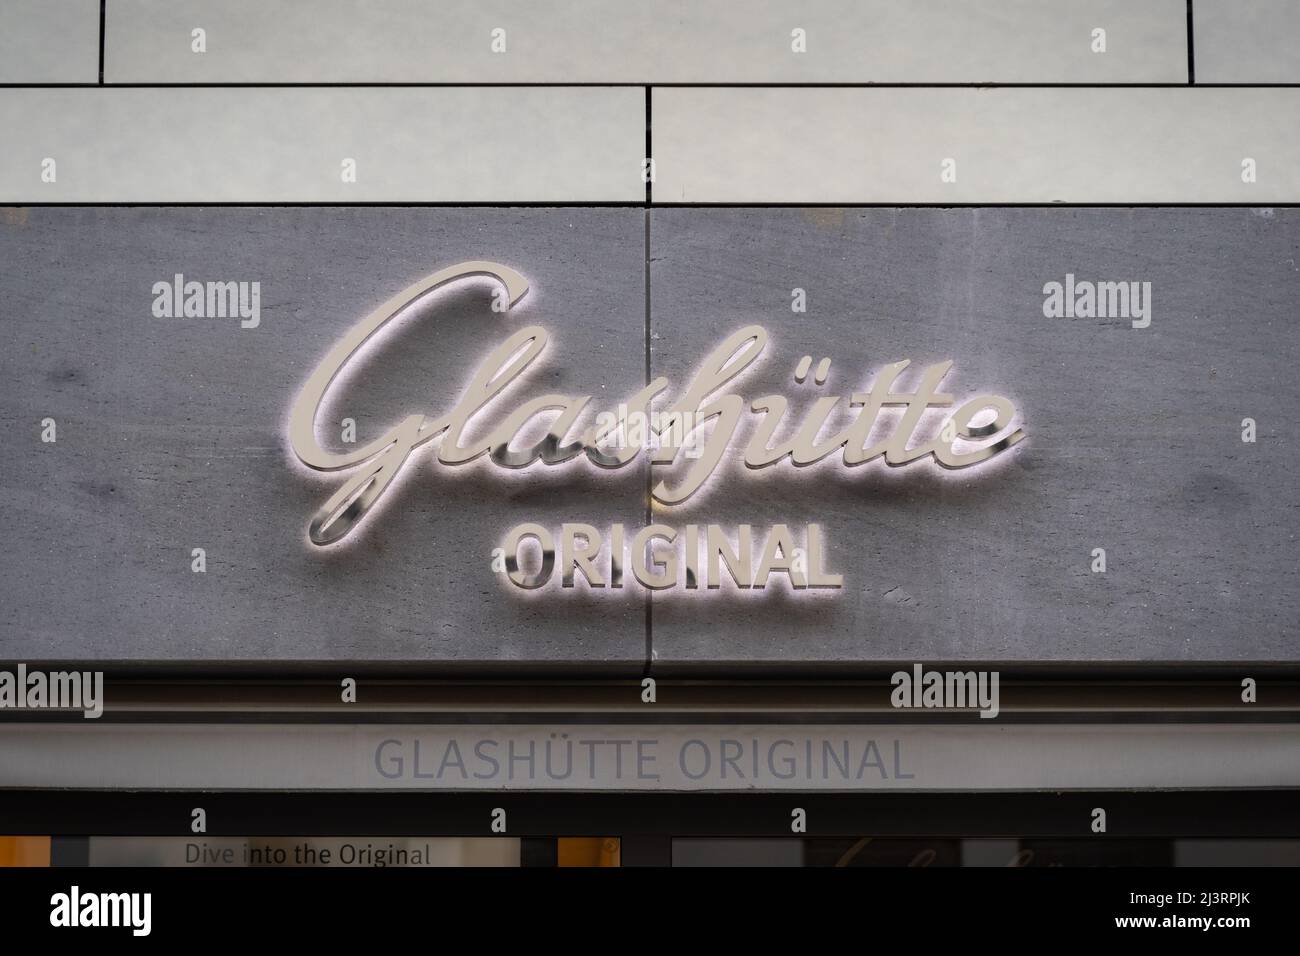 Glashütte Original-Logo an der Fassade eines Ladens. Beleuchtete Schriftzüge an der Außenfassade eines Gebäudes. Luxus-Marke von teuren Uhren mit hoher Qualität. Stockfoto